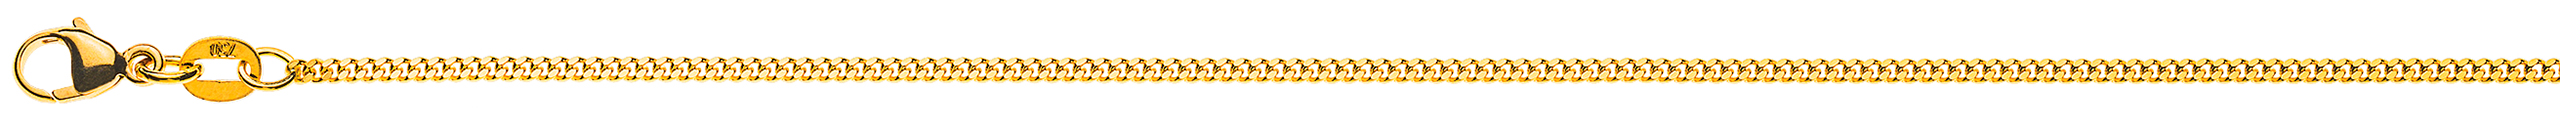 AURONOS Élégance Necklace yellow gold 14K curb chain polished 50cm 1.6mm